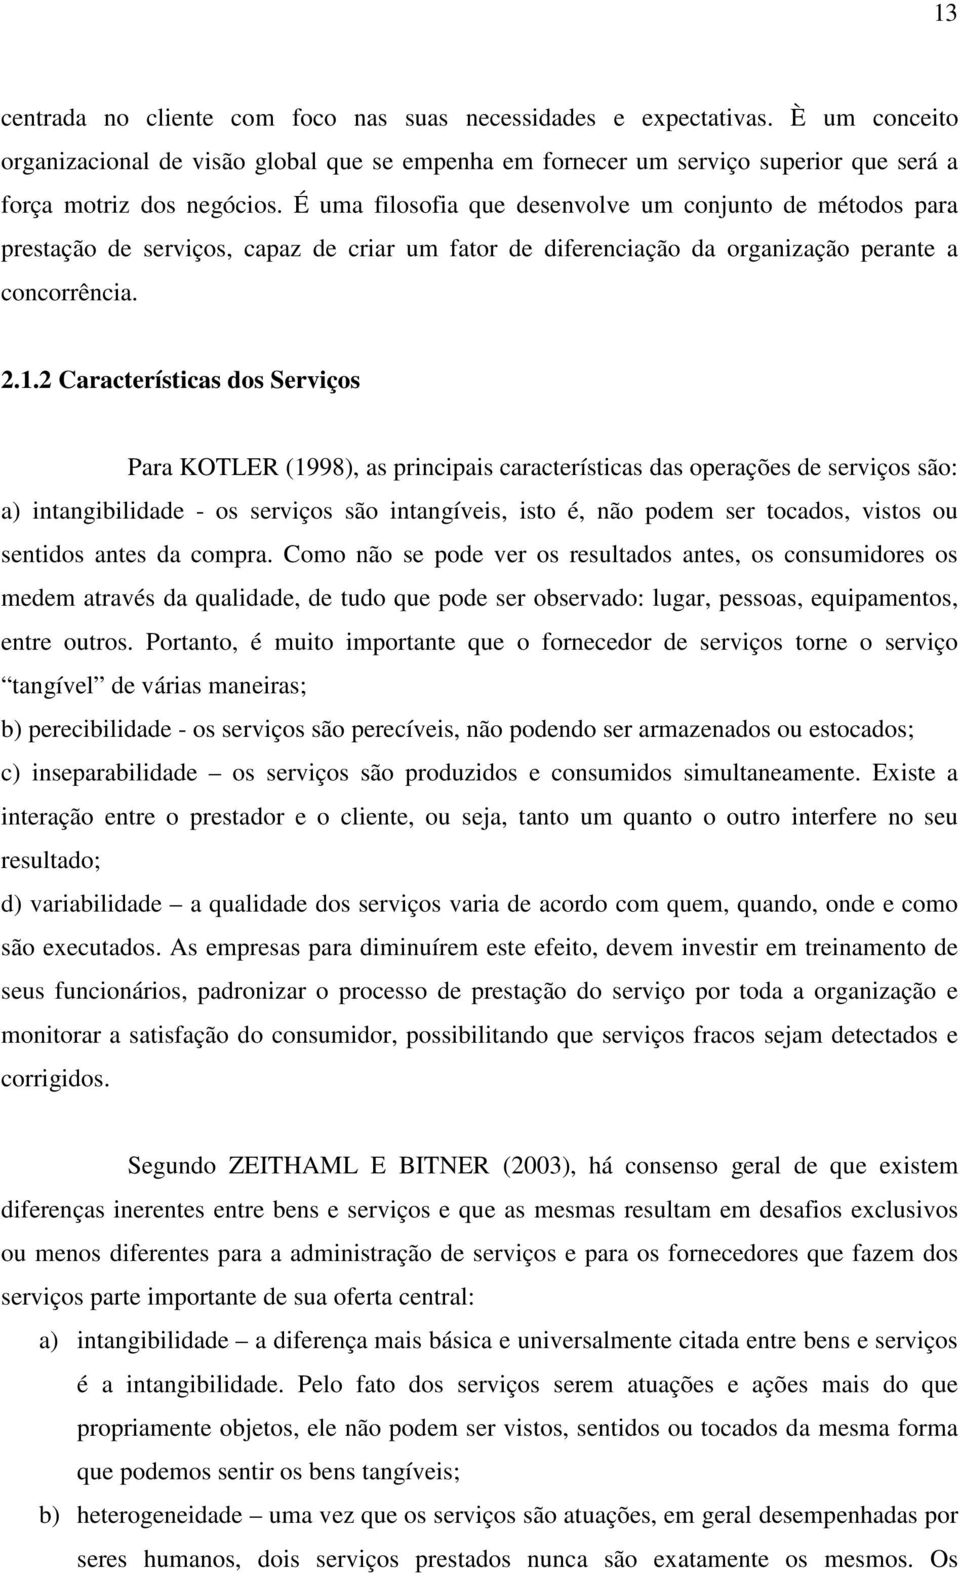 2 Características dos Serviços Para KOTLER (1998), as principais características das operações de serviços são: a) intangibilidade - os serviços são intangíveis, isto é, não podem ser tocados, vistos